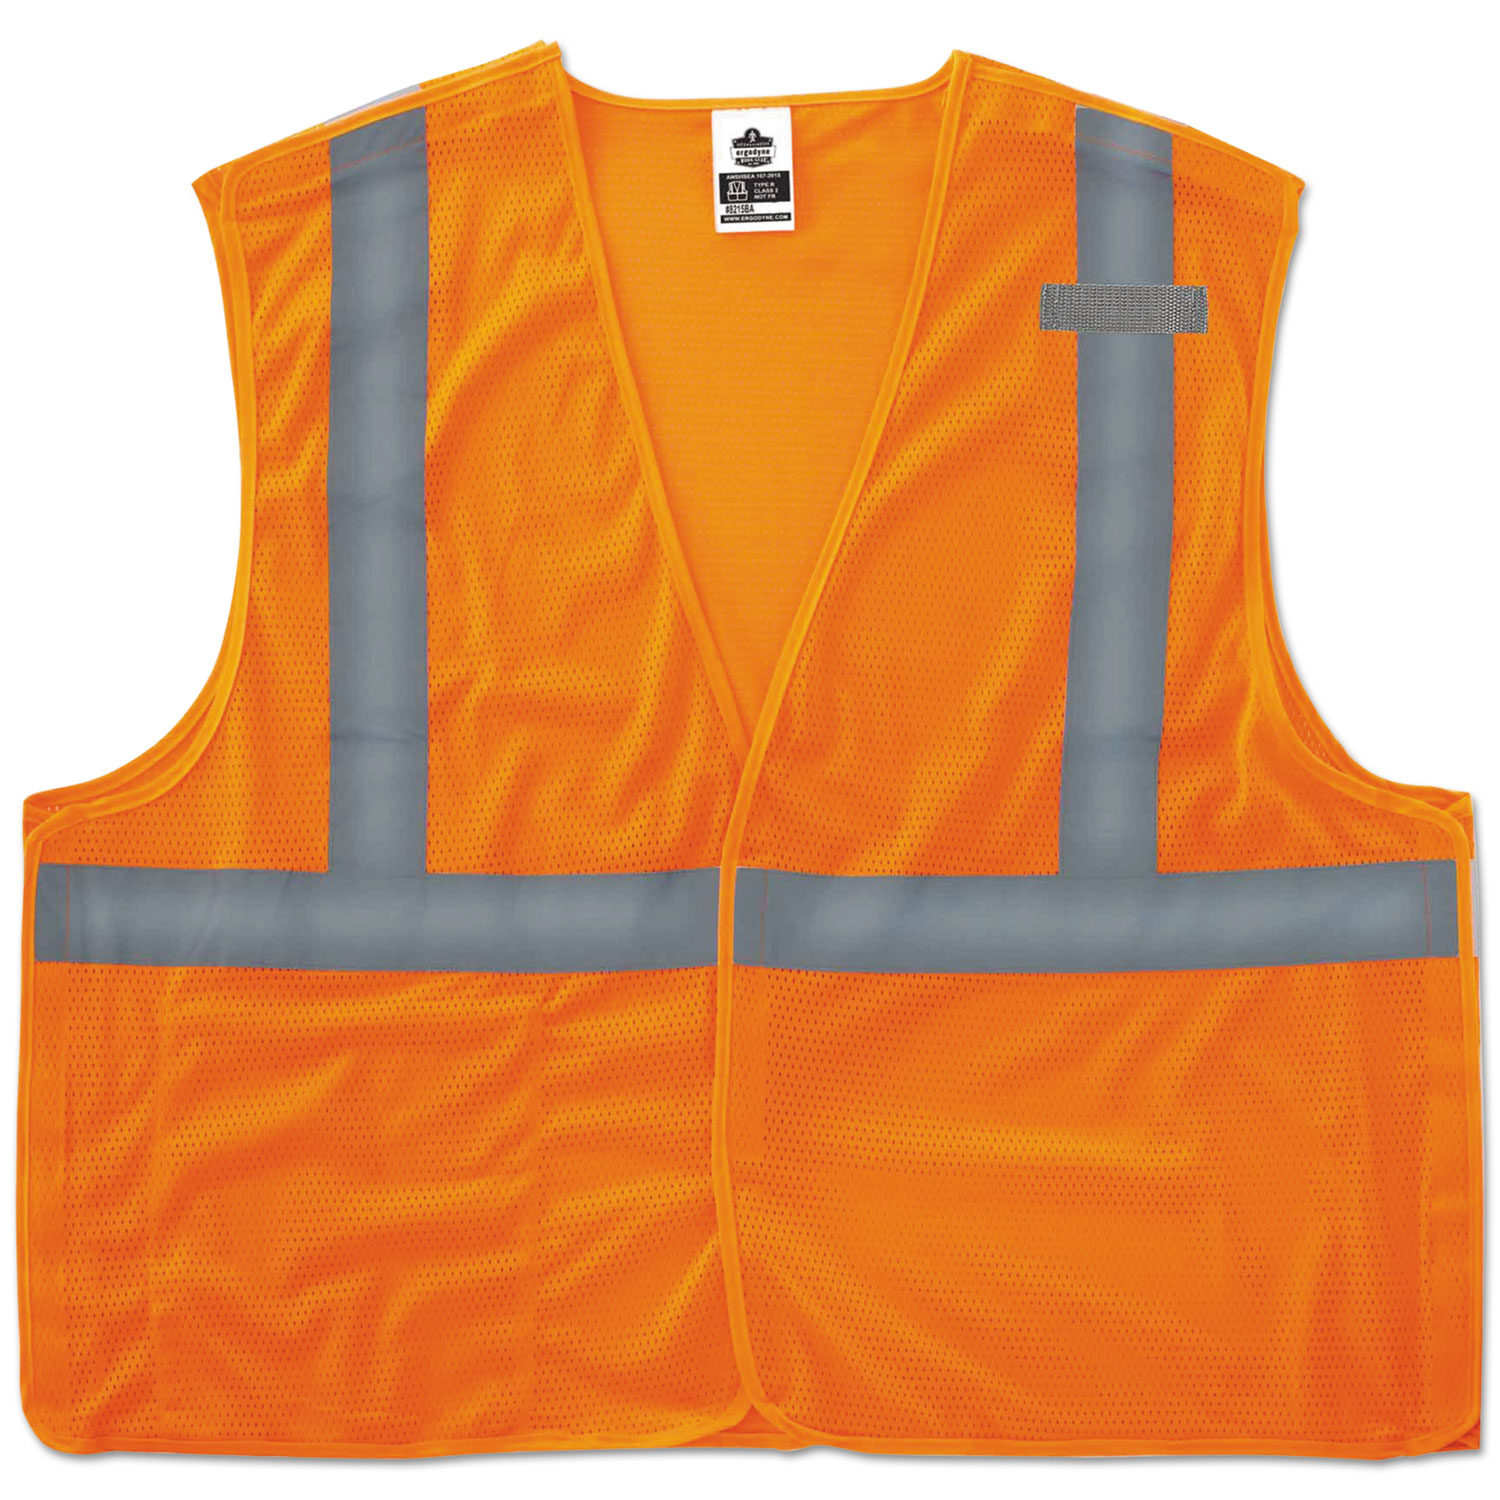 GloWear 8215BA Type R Class 2 Econo Breakaway Mesh Vest, Orange, L/XL